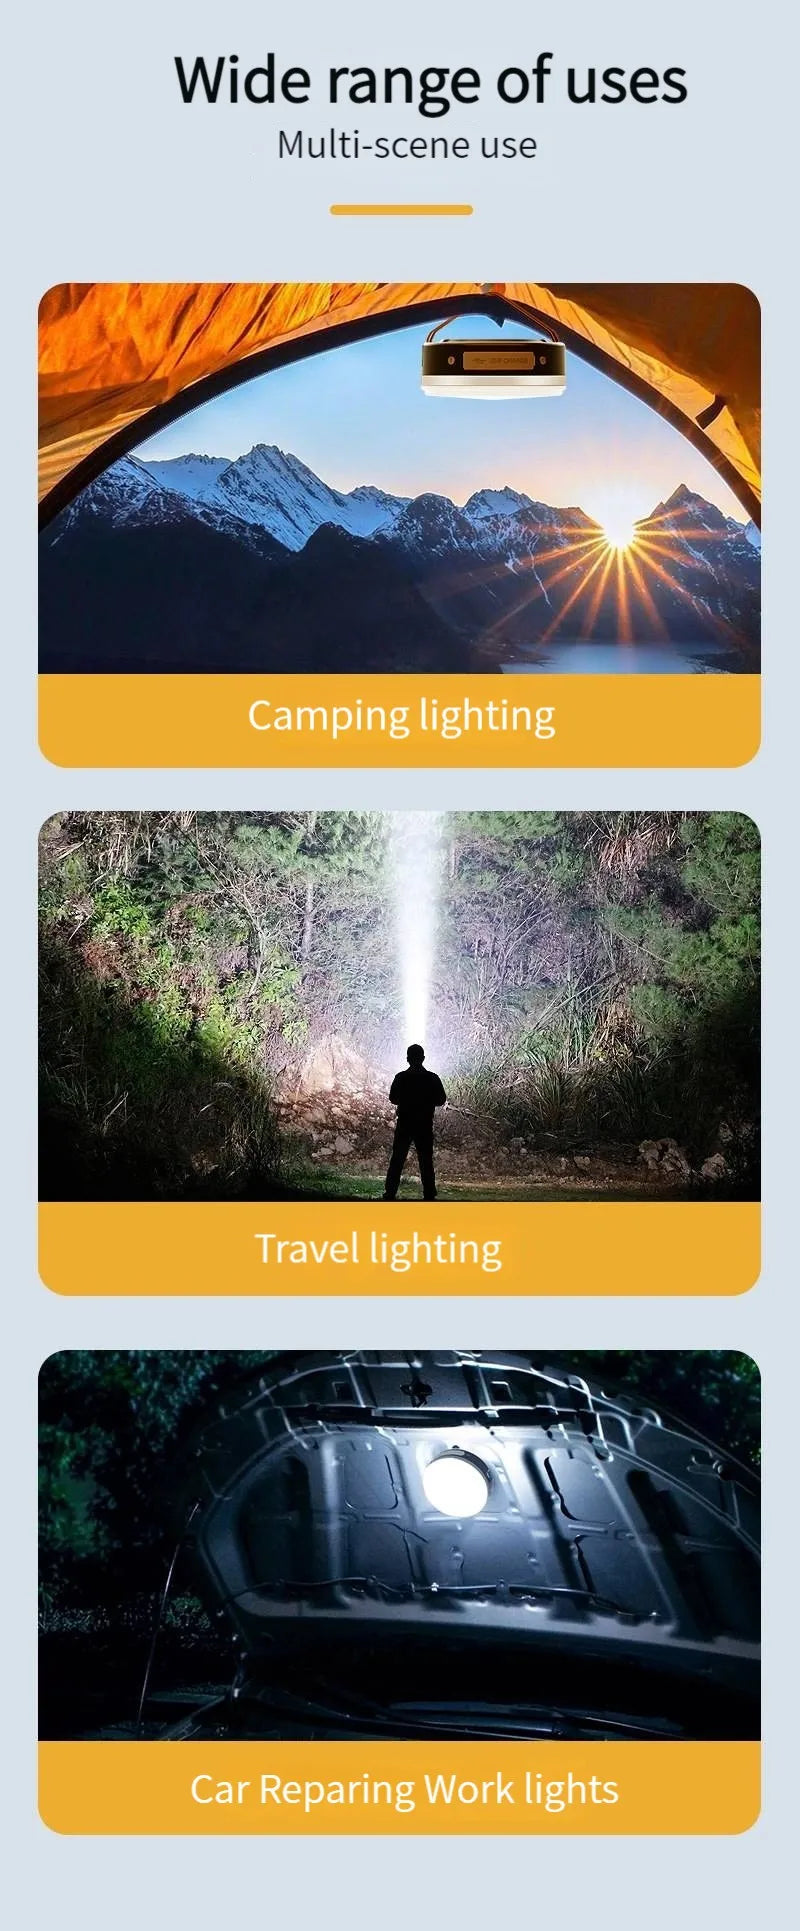 Multi-purpose use for camping, travel, car repairs, and work lighting in various settings.